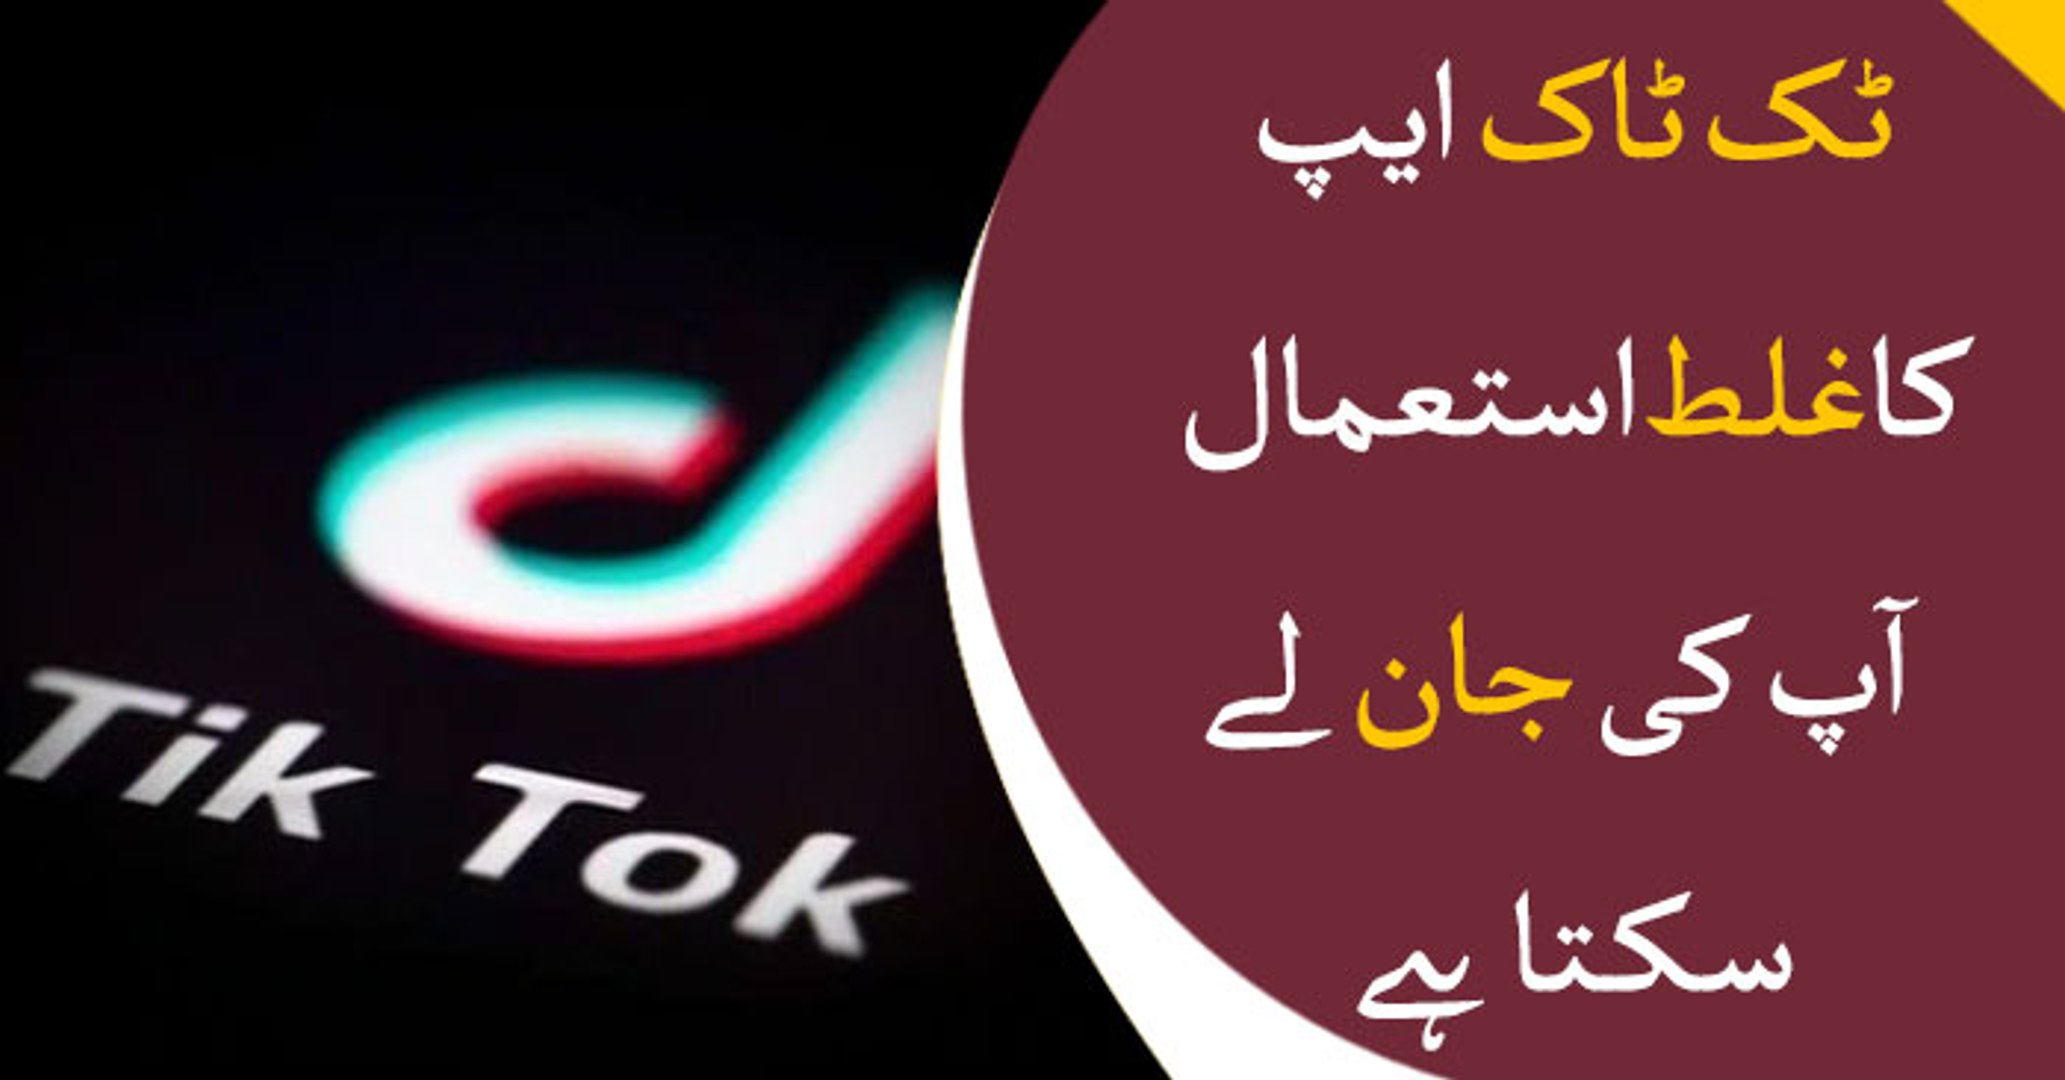 Pakistan melarang TikTok karena video ‘tidak bermoral’ dan ‘tidak senonoh’